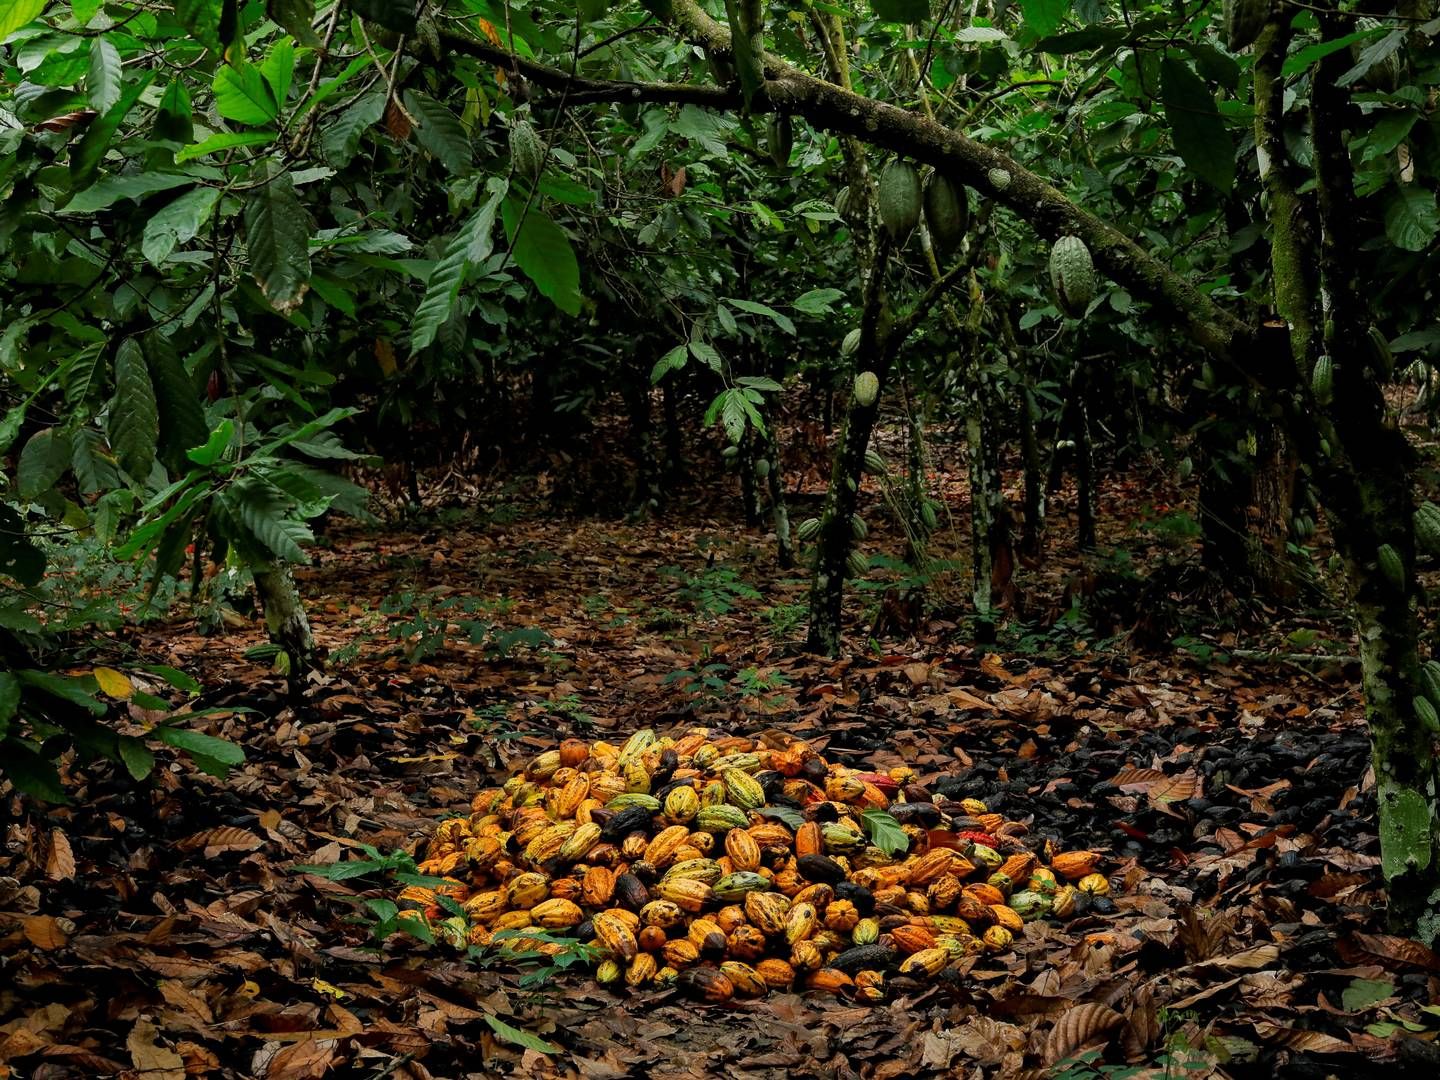 Ifølge de danske chokoladeproducenter er det ikke alene udsigten til en fejlslagen høst senere på året, der har fået kakaopriserne til at stige så voldsomt. Også spekulation spiller en stor rolle, lyder det fra flere. | Foto: Francis Kokoroko/Reuters/Ritzau Scanpix